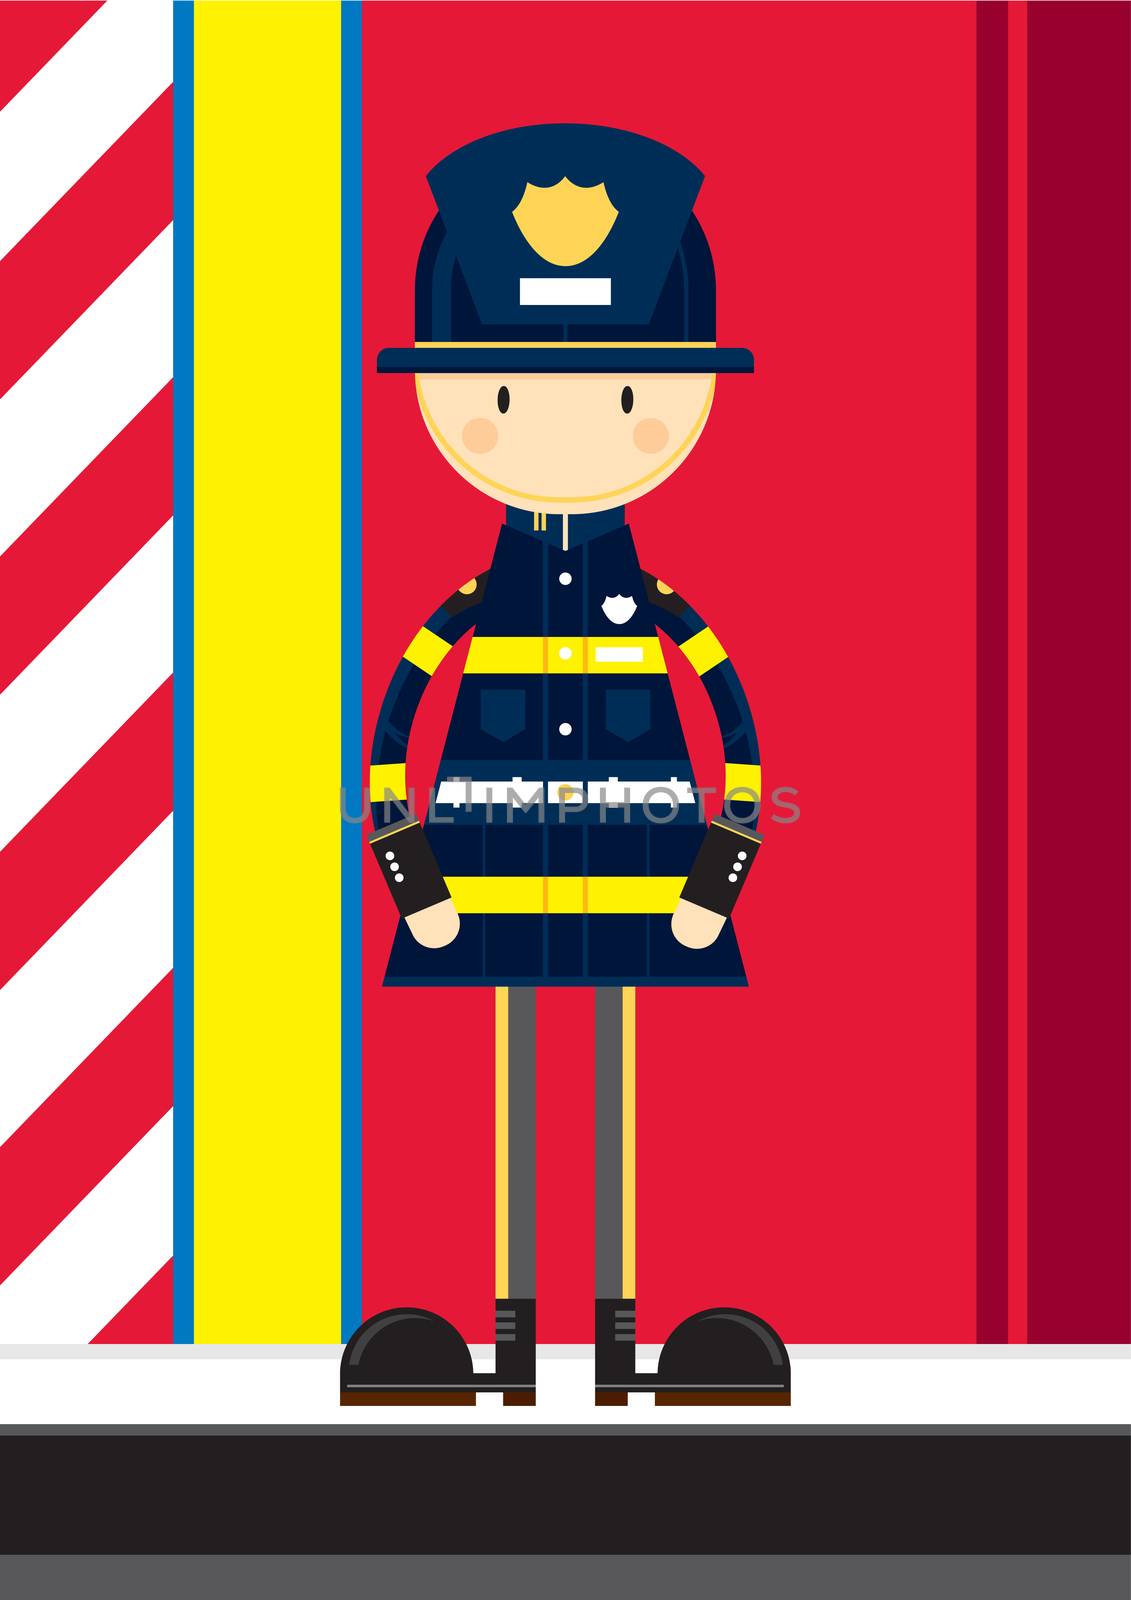 Cute Cartoon Fireman by markmurphycreative